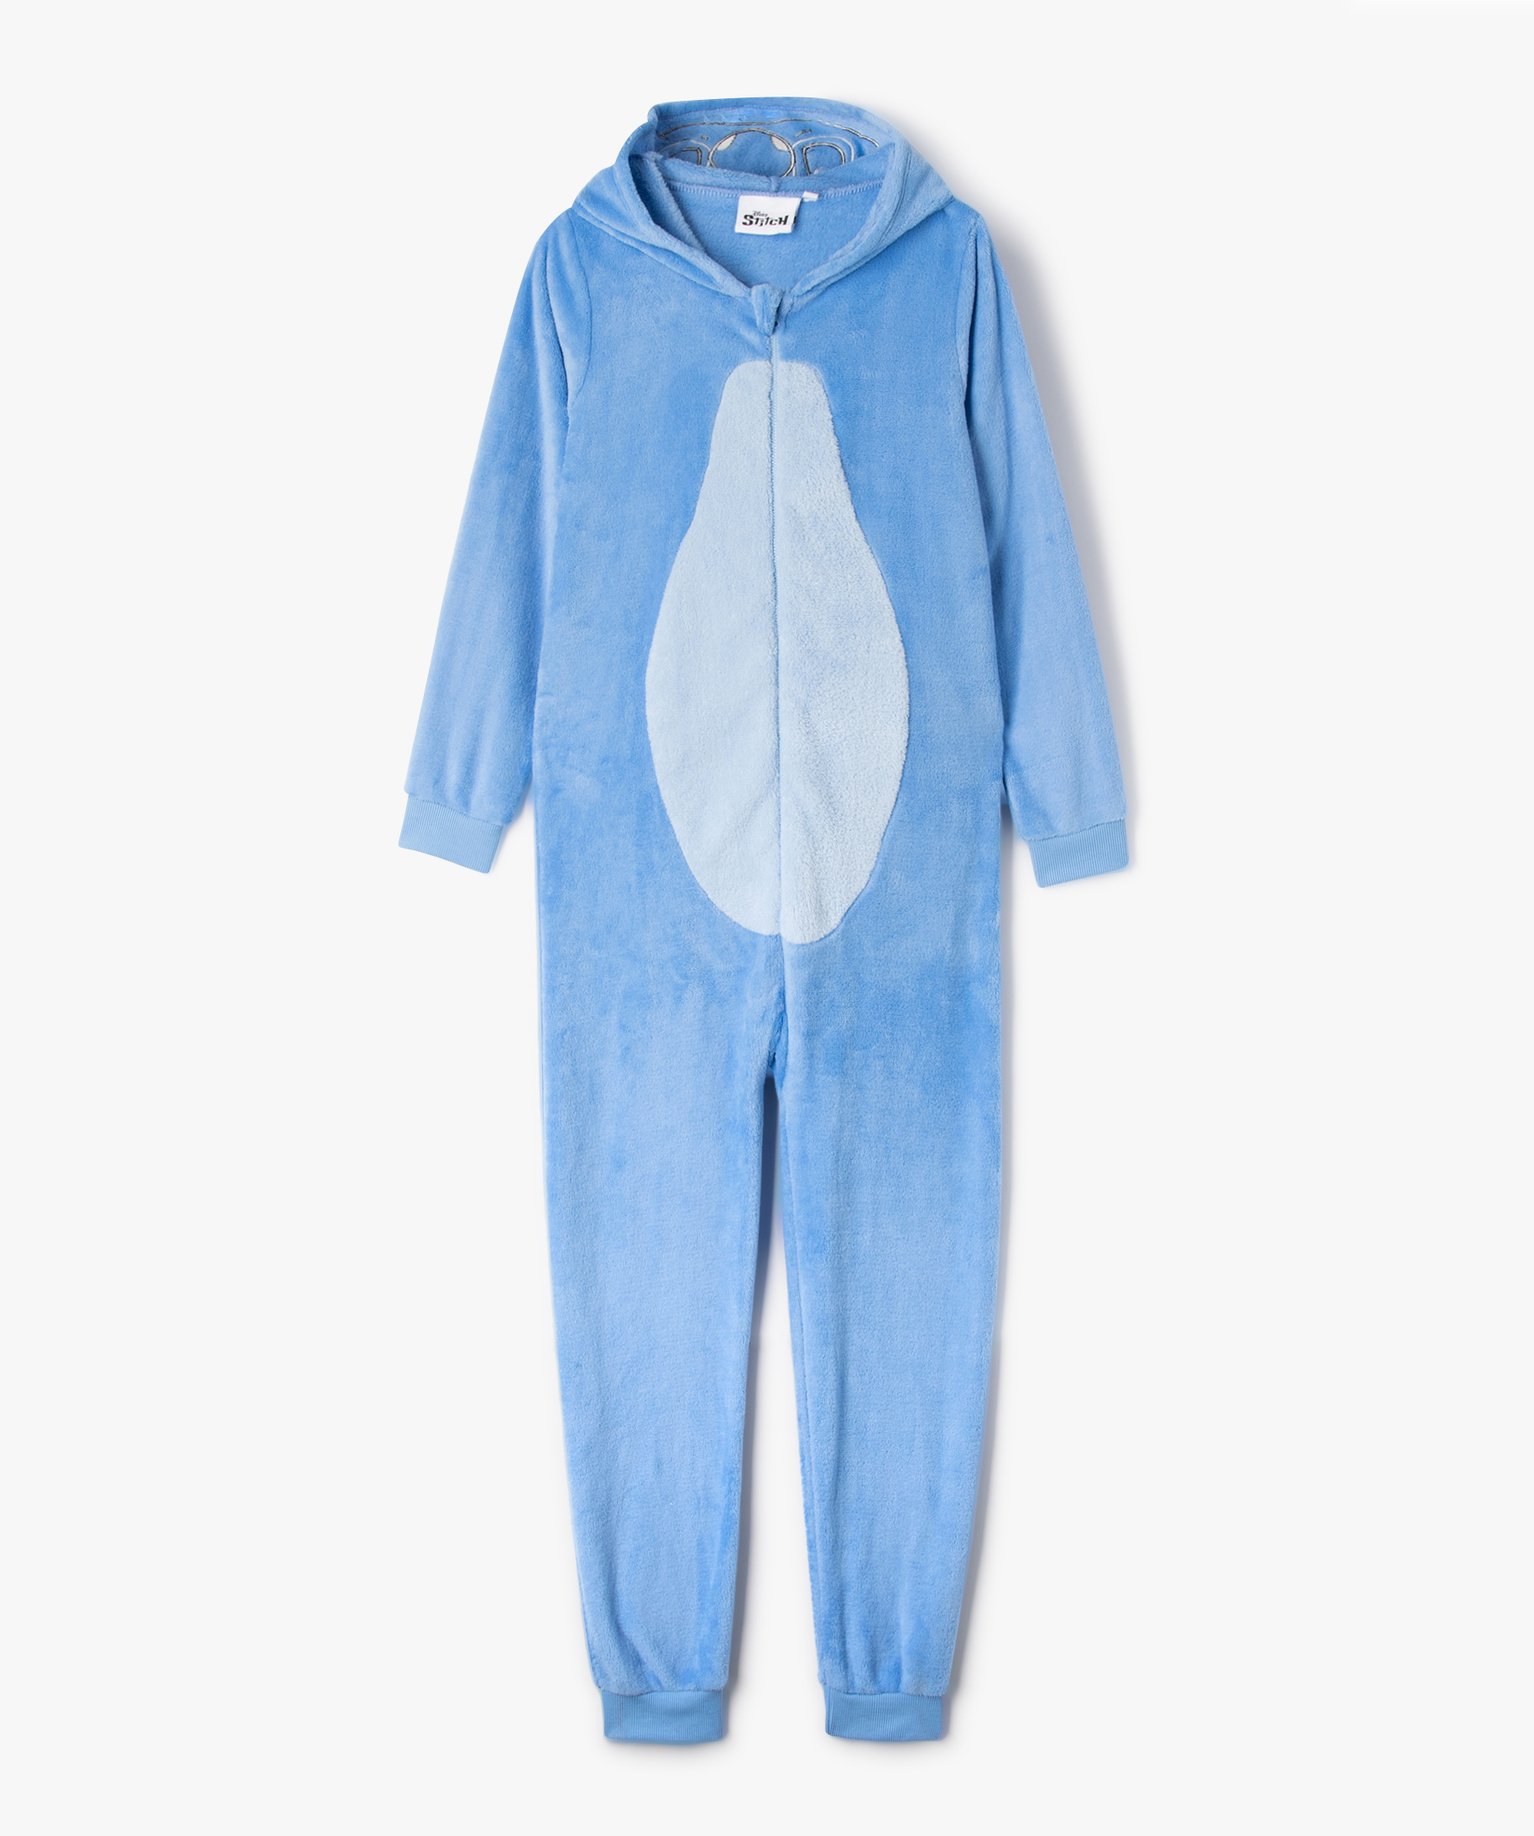 Combinaison Pyjama Stitch Bébé, Disney